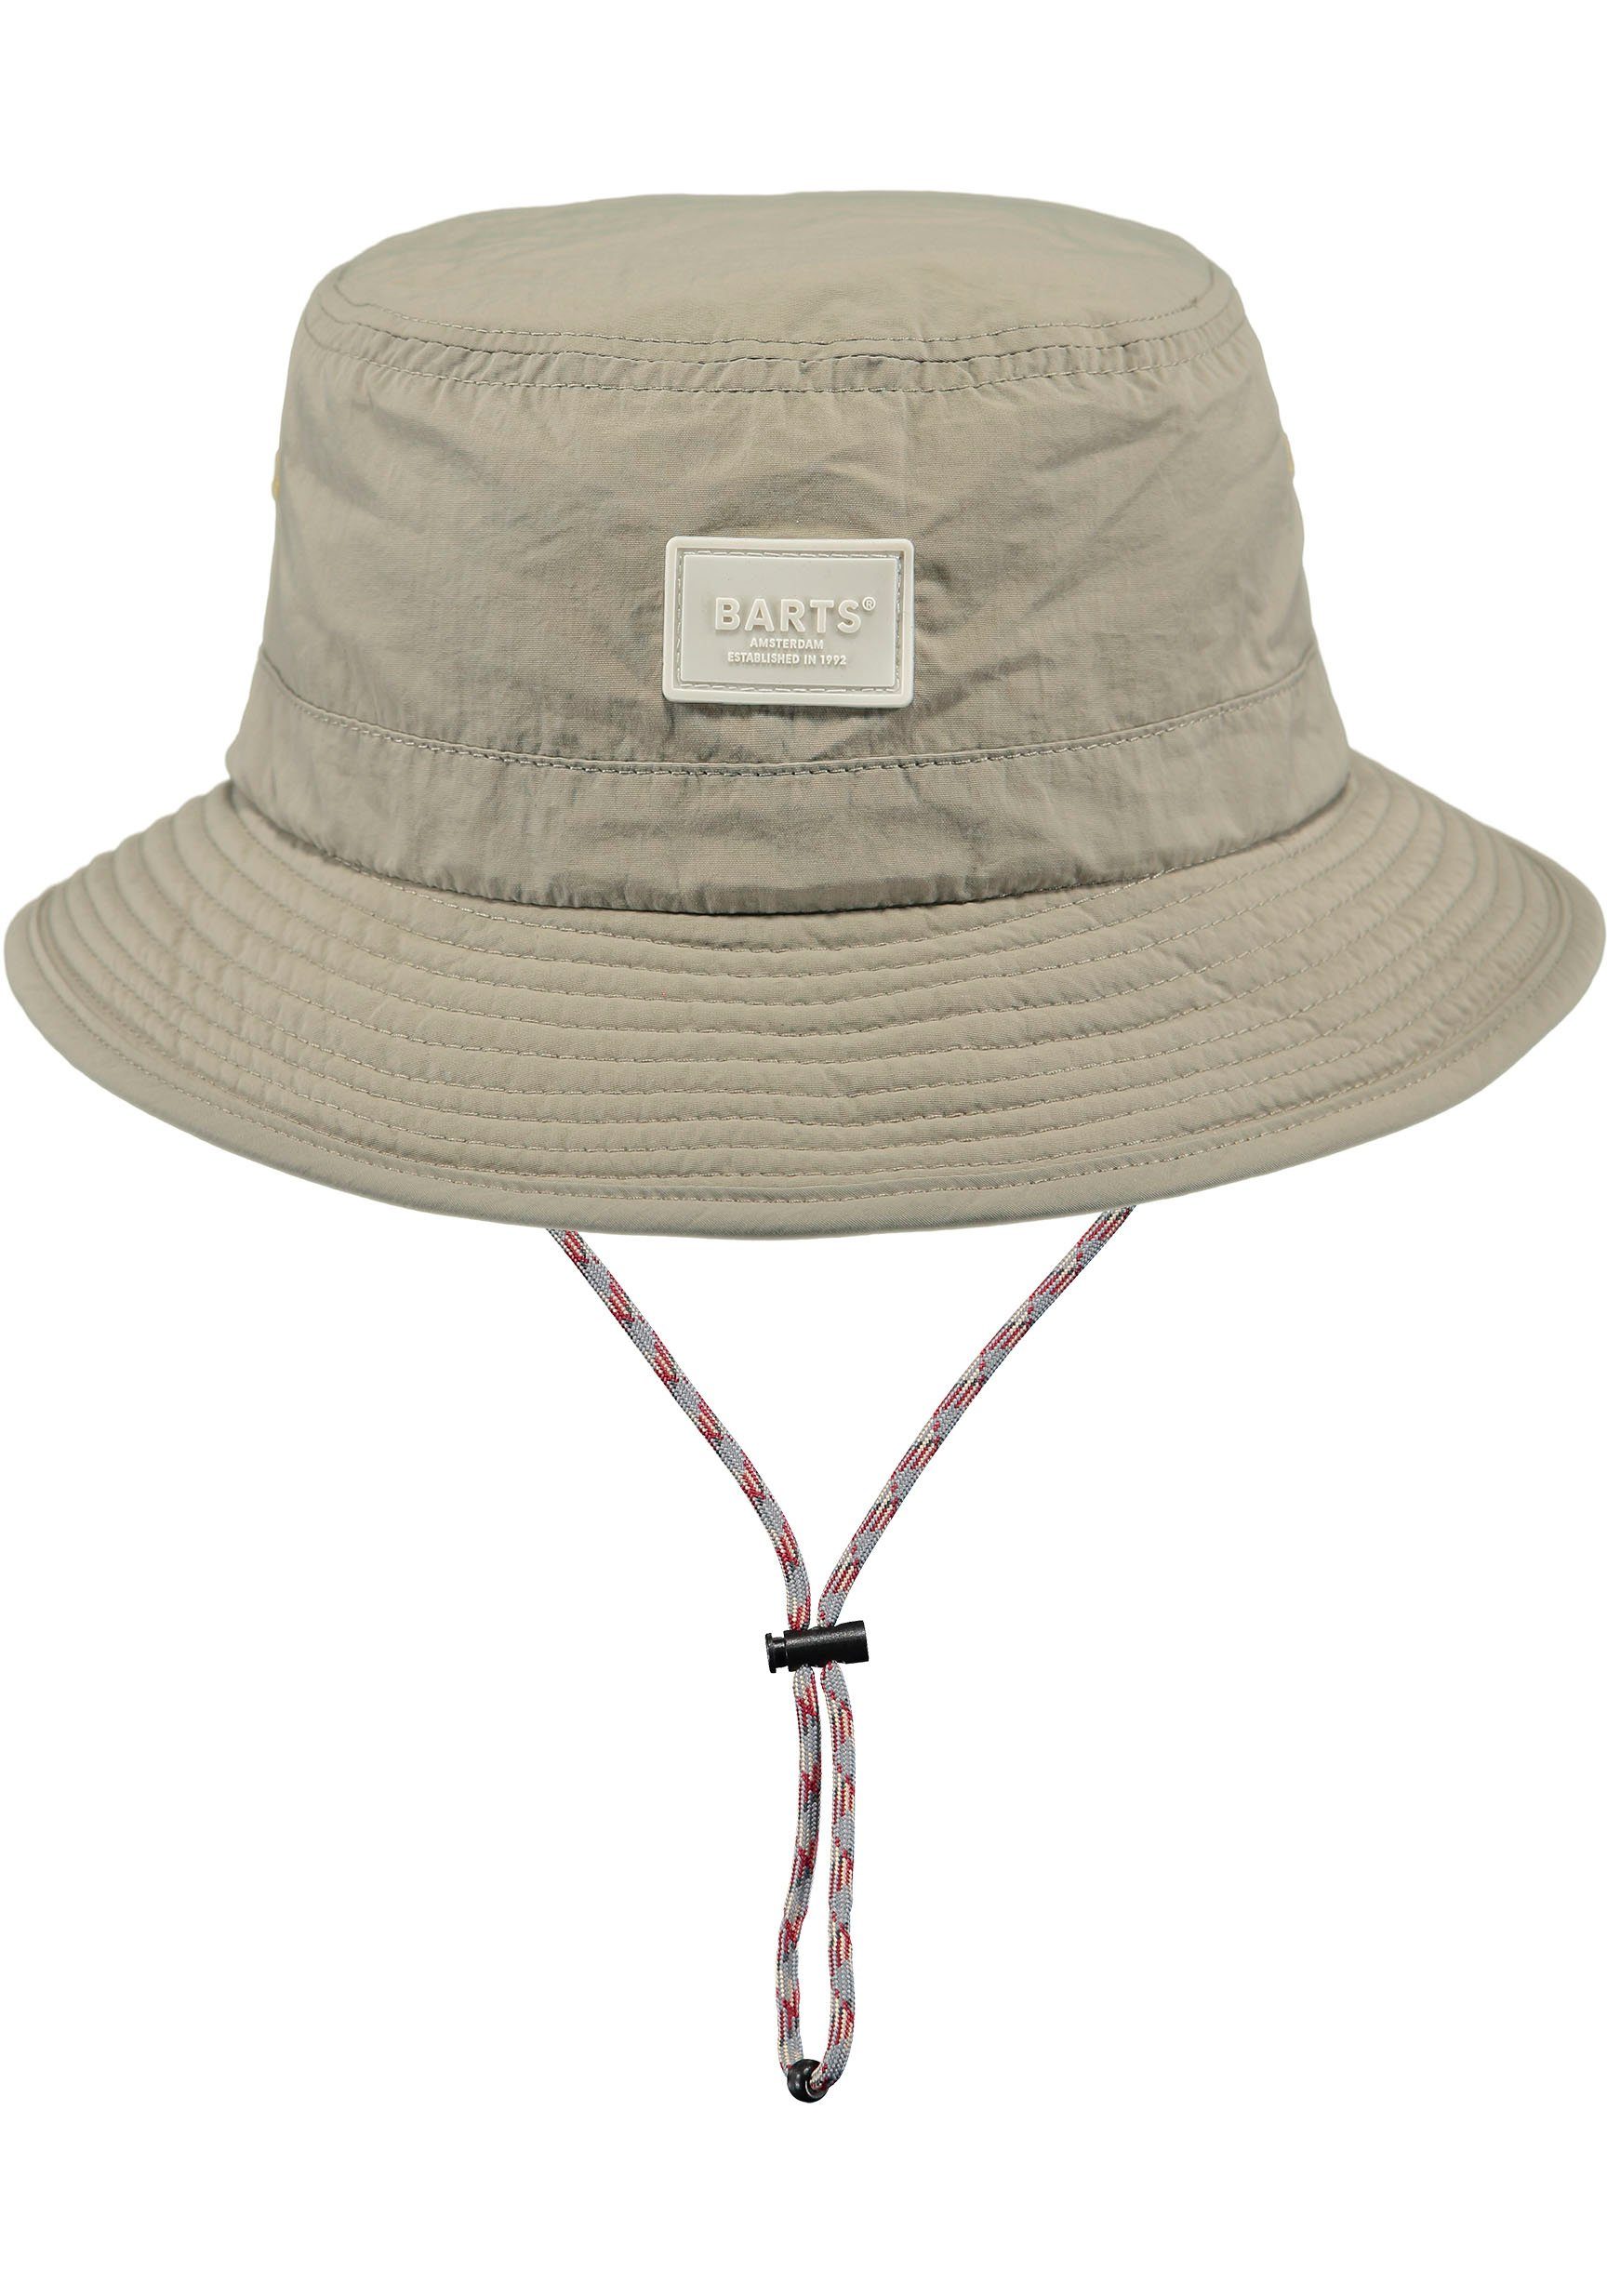 Hutband natur innenliegendes verstellbare Fischerhut durch Passform mit Barts Bindeband,